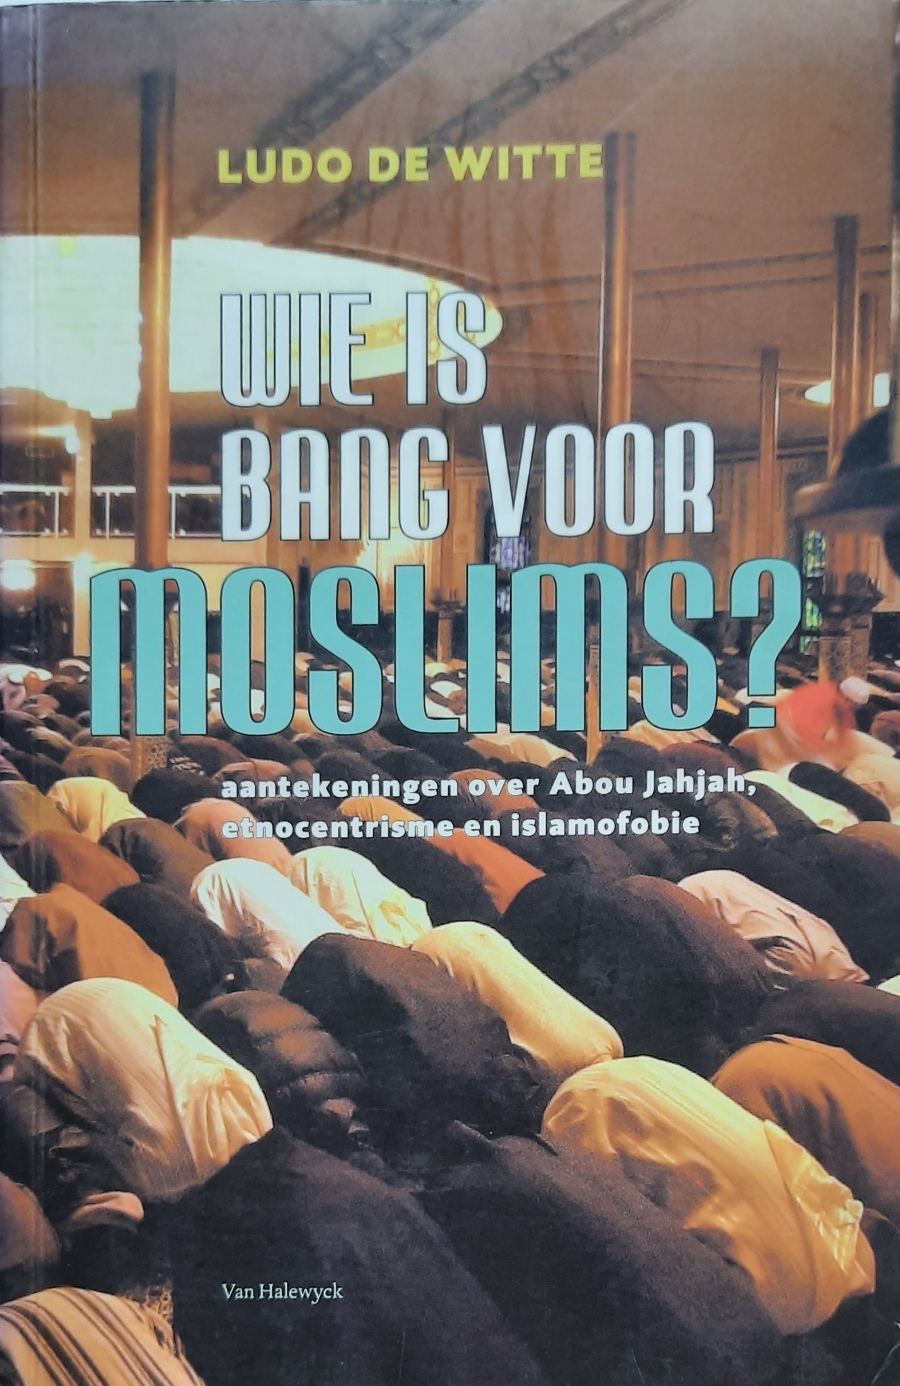 Book cover 202203281724: DE WITTE Ludo | Wie is bang voor moslims? Aantekeningen over Abou Jahjah, etnocentrisme en islamofobie